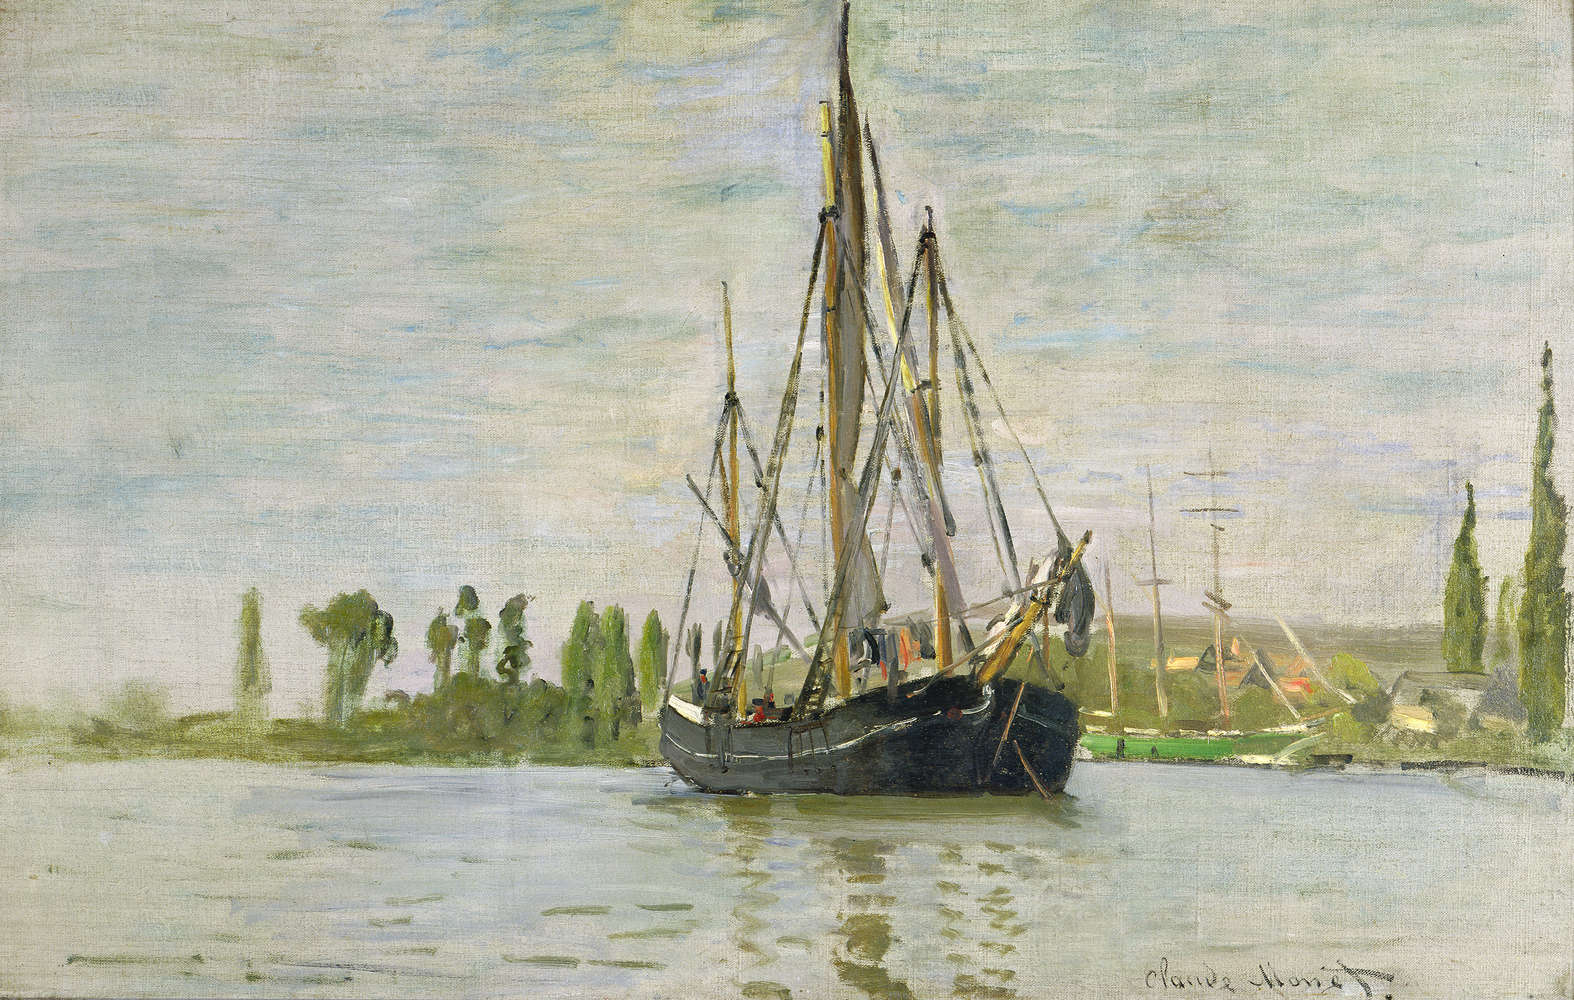             Fototapete "Die Chasse-Marée vor Anker" von Claude Monet
        